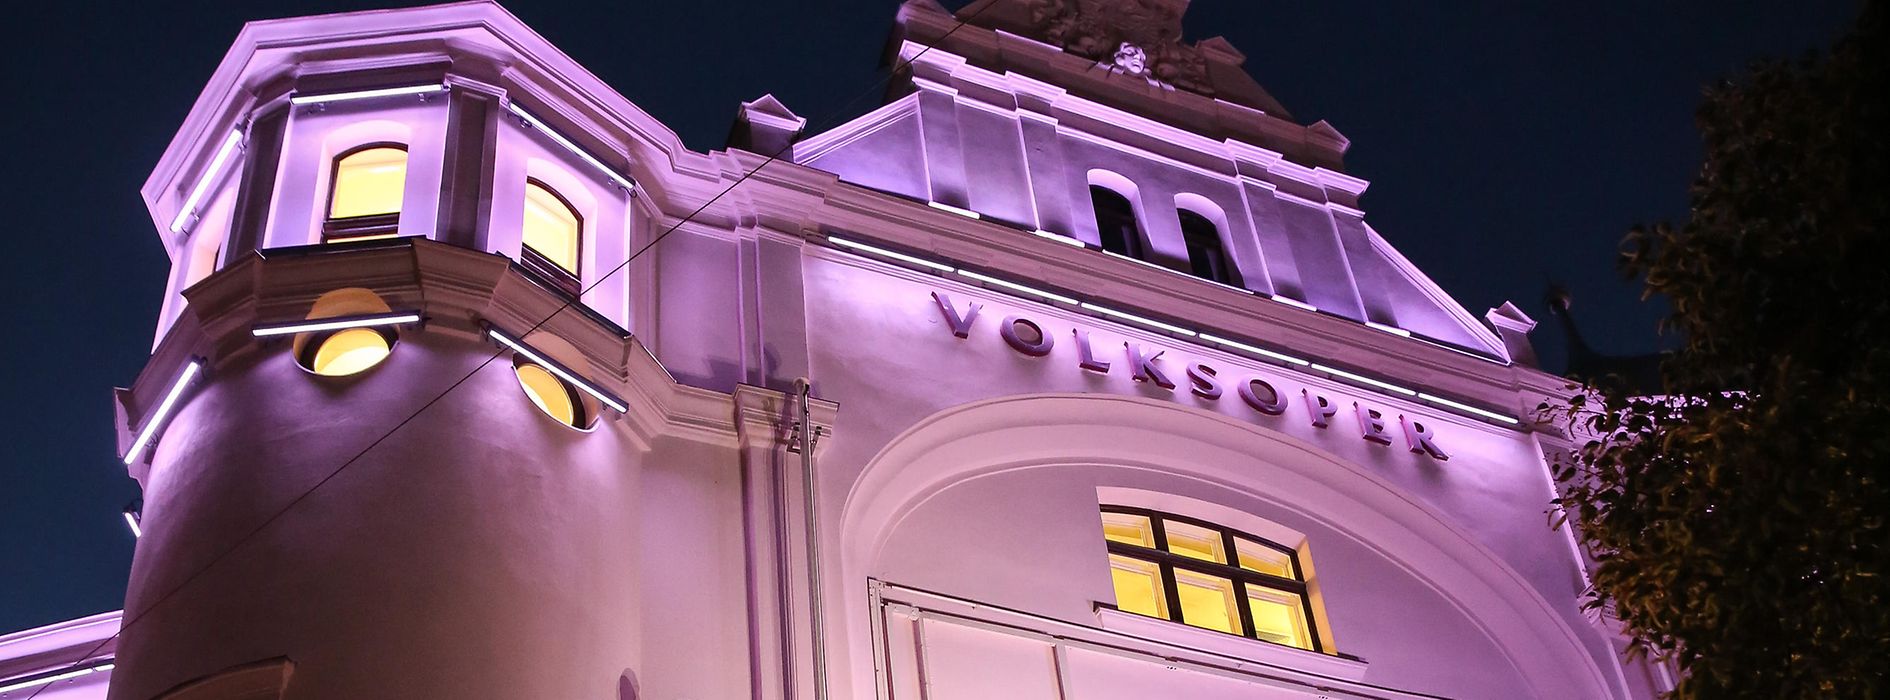 Volksoper Vienna